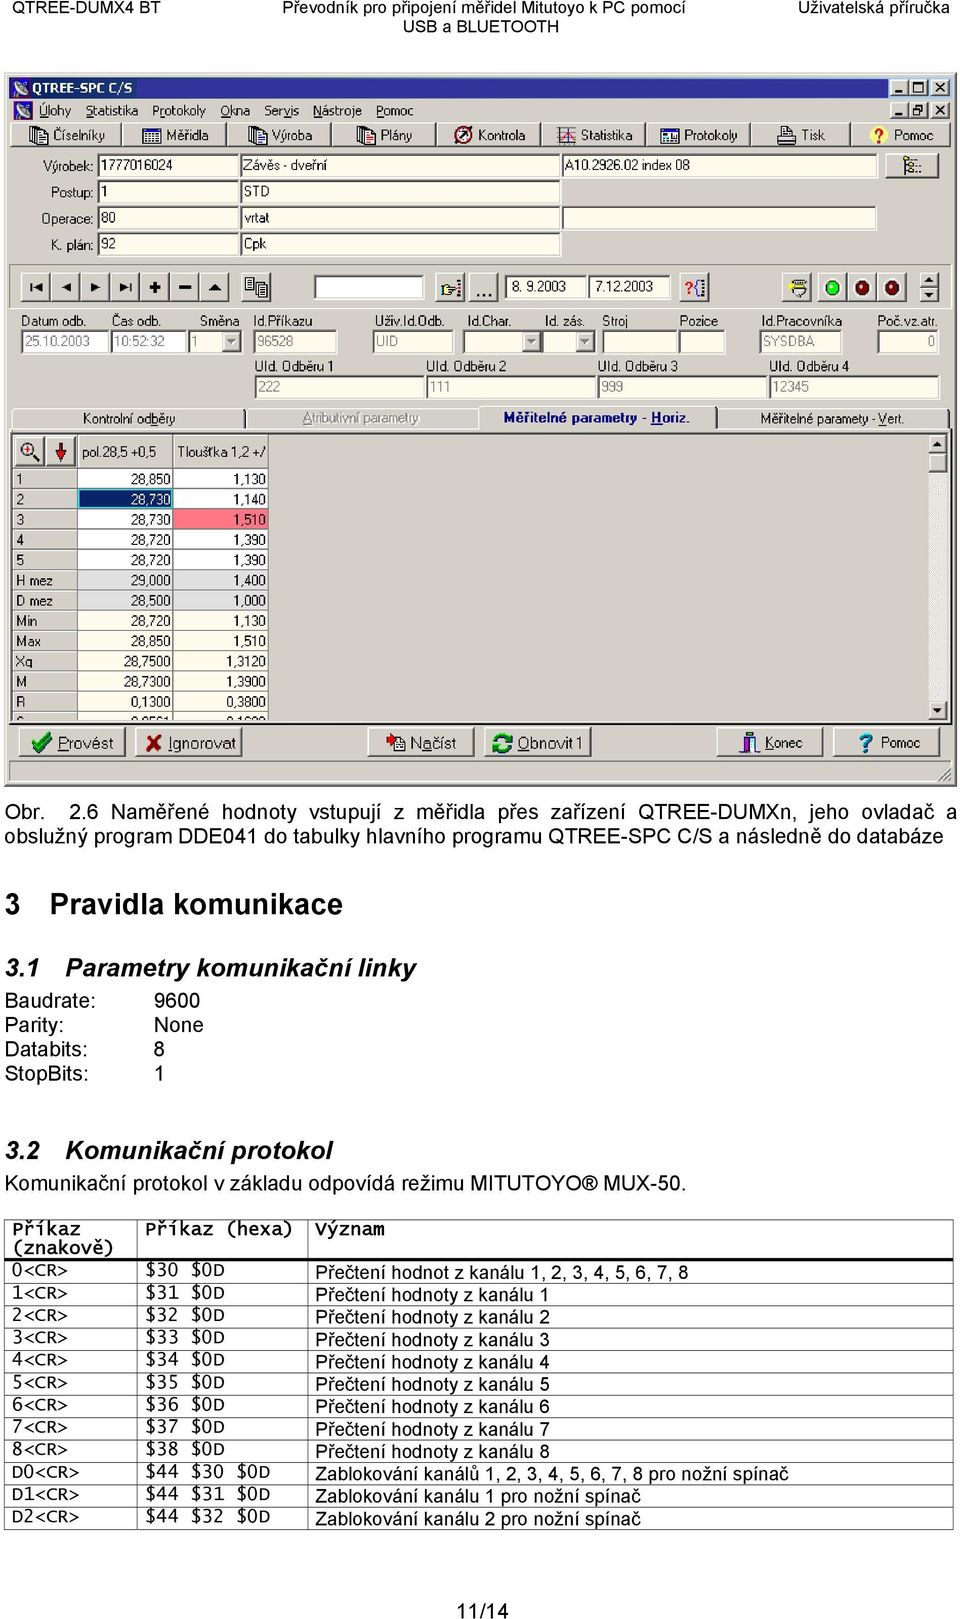 1 Parametry komunikační linky Baudrate: 9600 Parity: None Databits: 8 StopBits: 1 3.2 Komunikační protokol Komunikační protokol v základu odpovídá režimu MITUTOYO MUX-50.